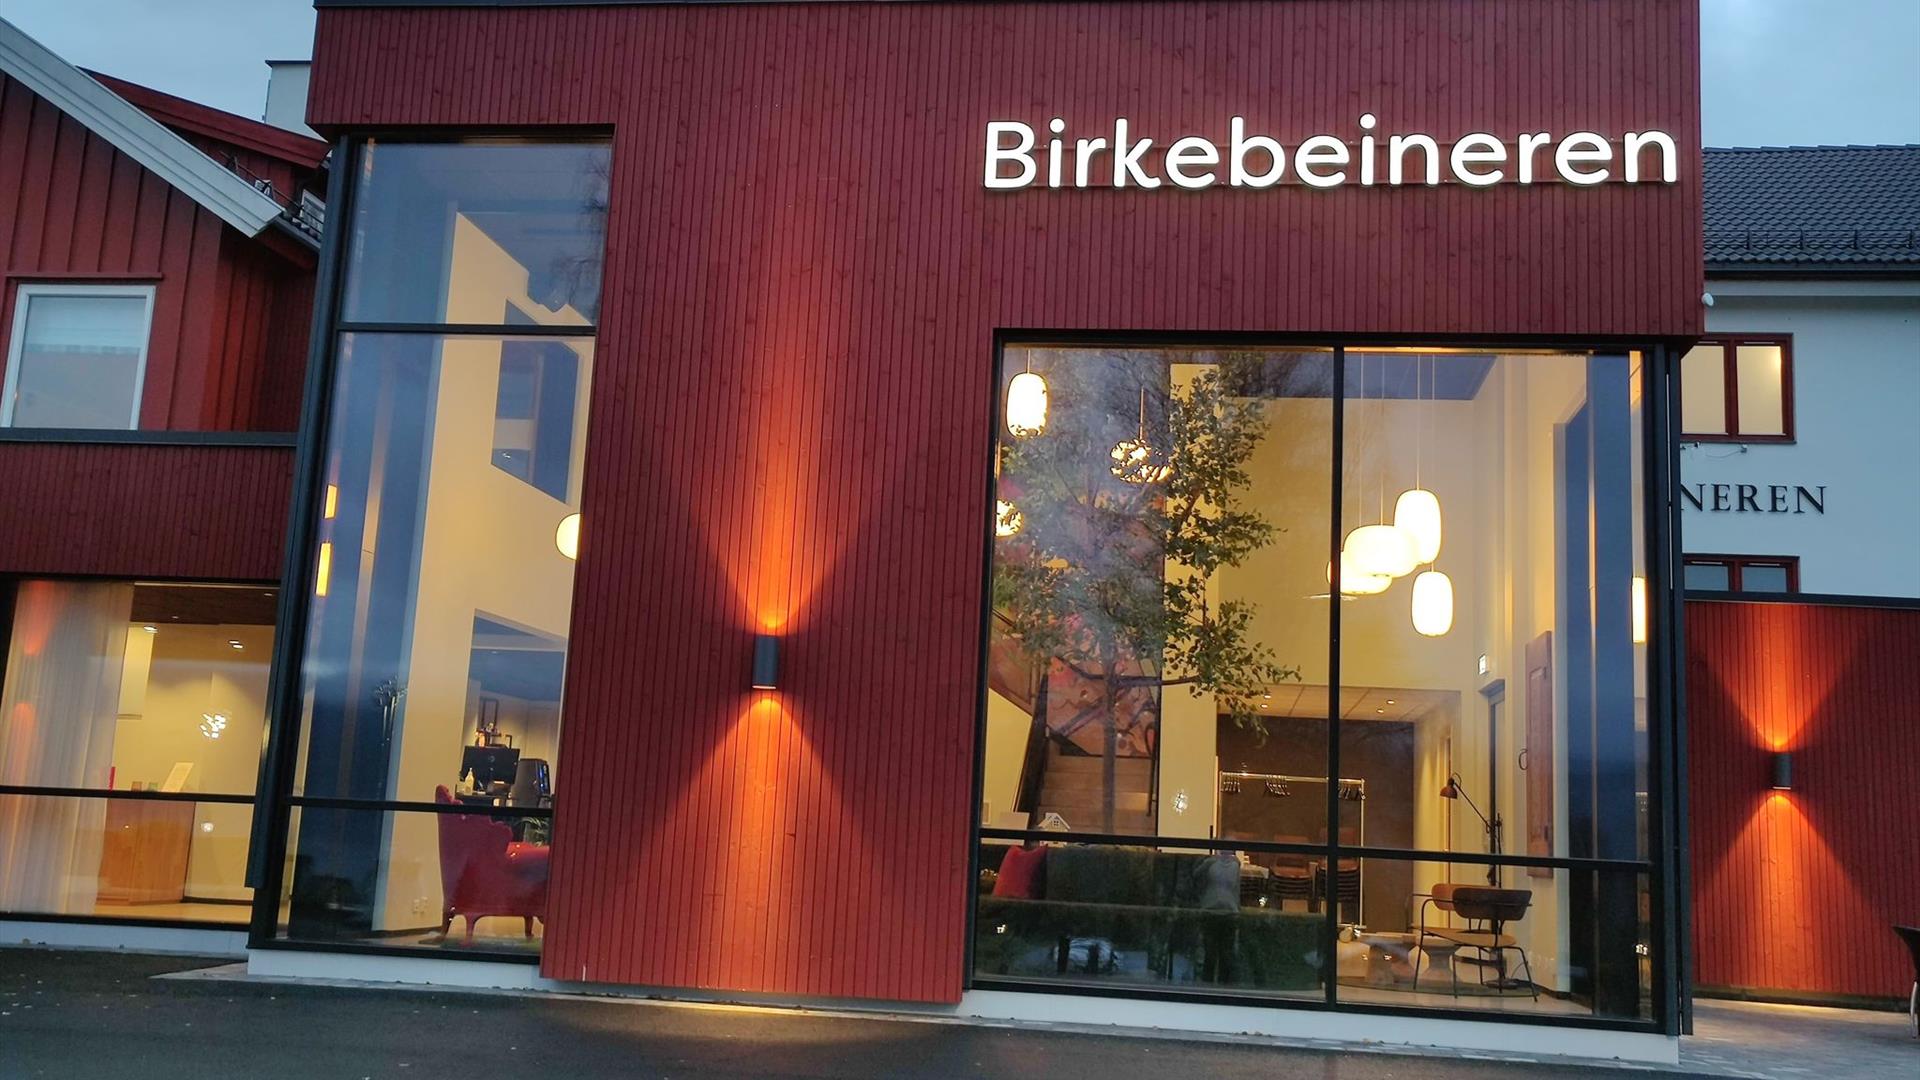 The entrance at Birkebeineren Hotel